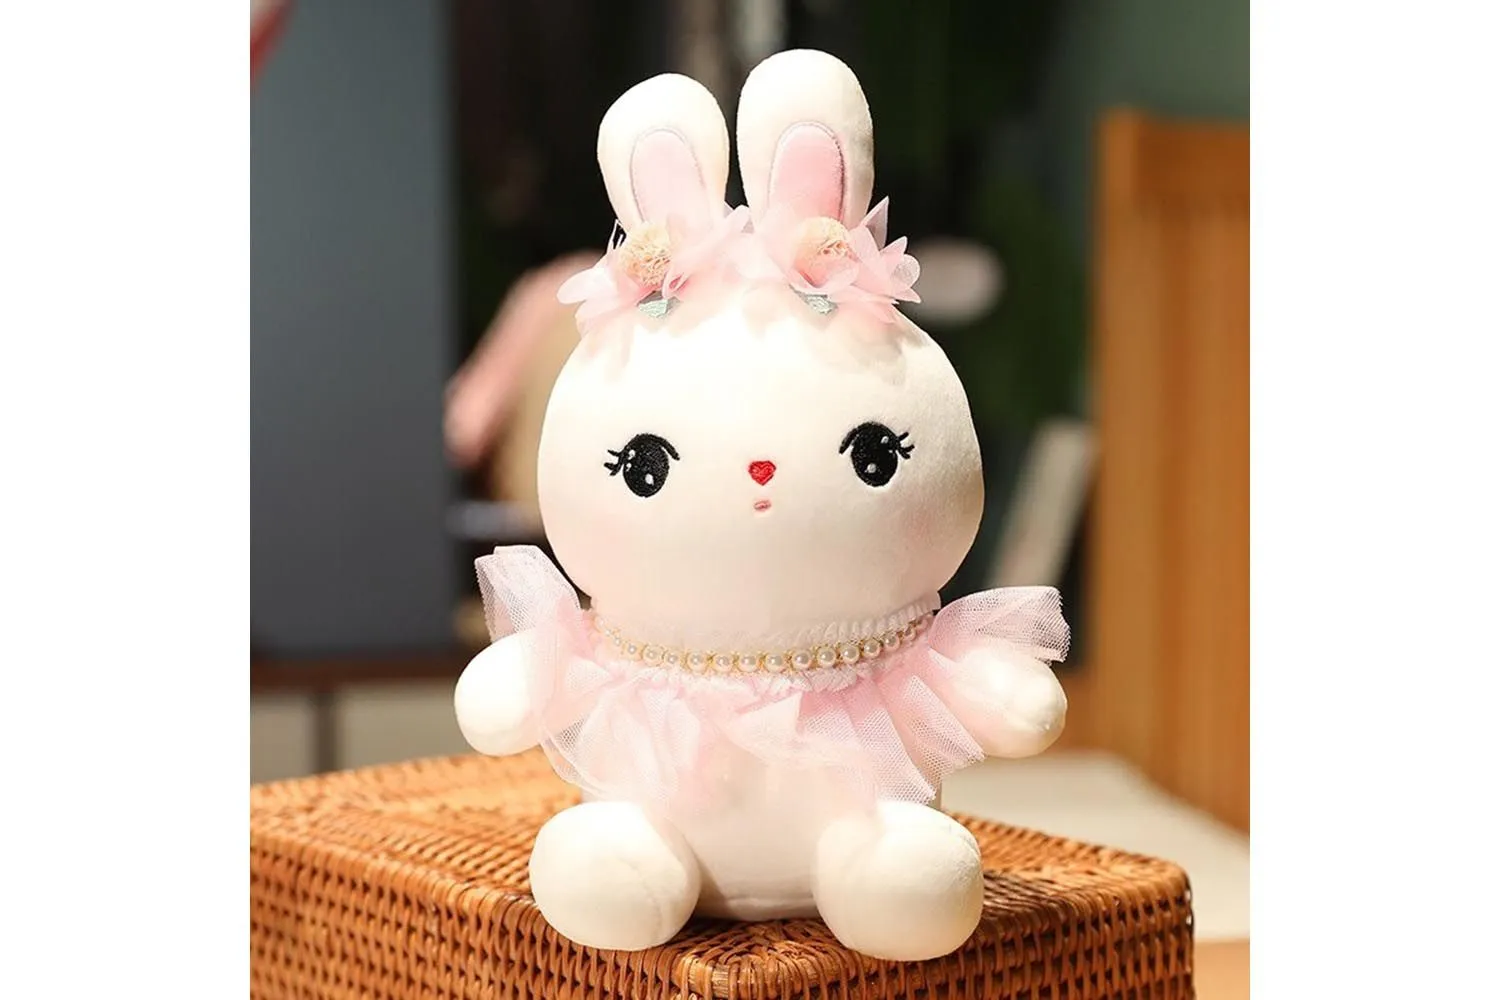 Мягкая игрушка Плюшевый Кролик, 27 см